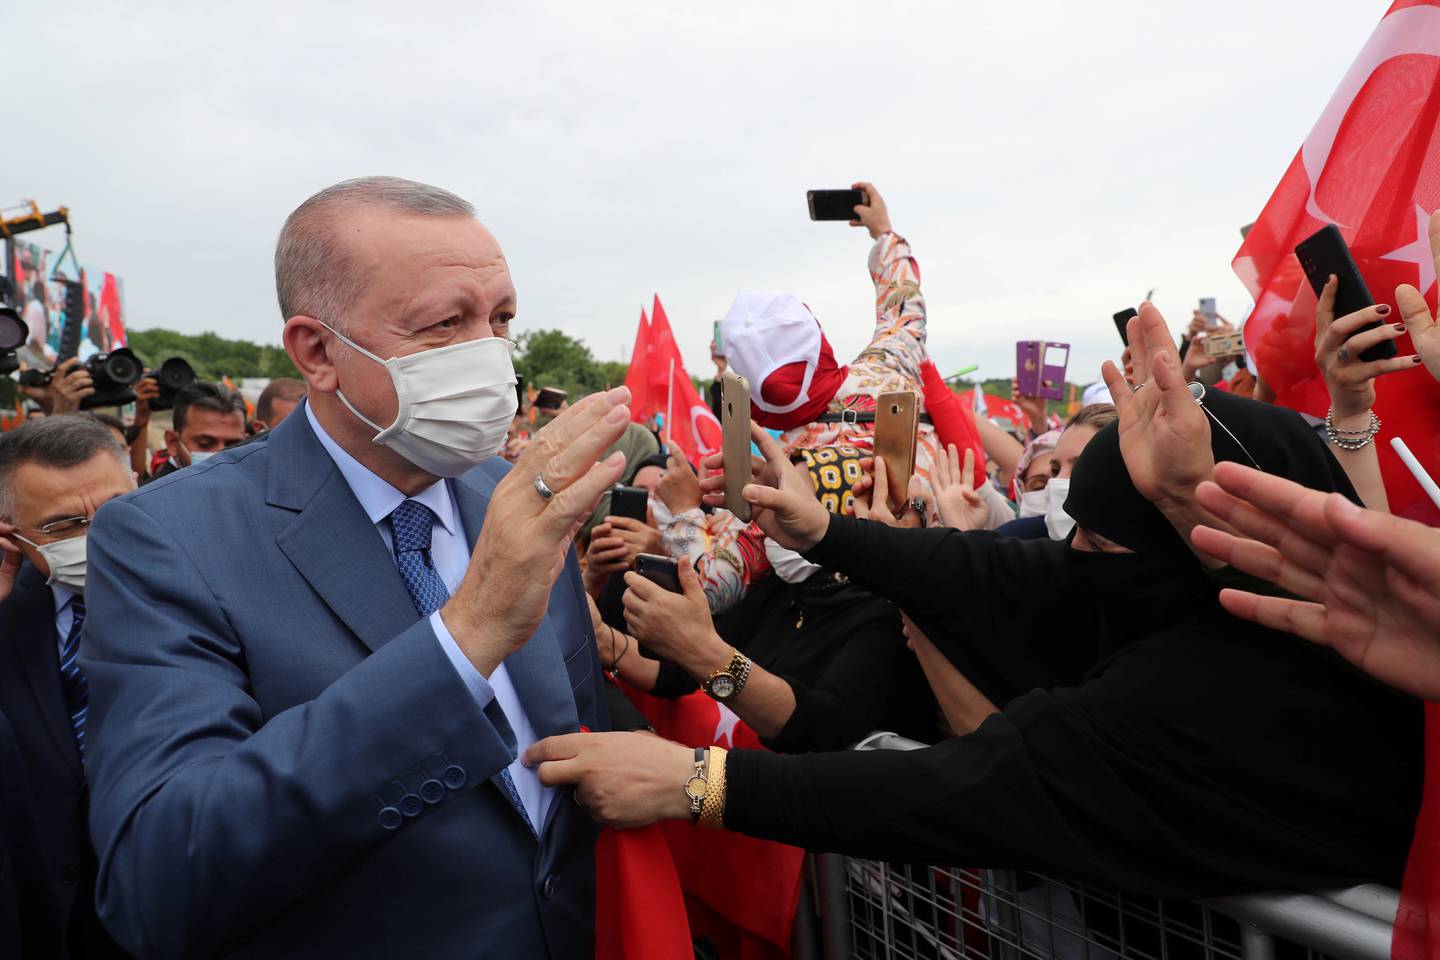 Tyrkias president Tayyip Erdogan møter støttespillere på et utbyggingsprosjekt kalt Kanal Istanbul i juni.